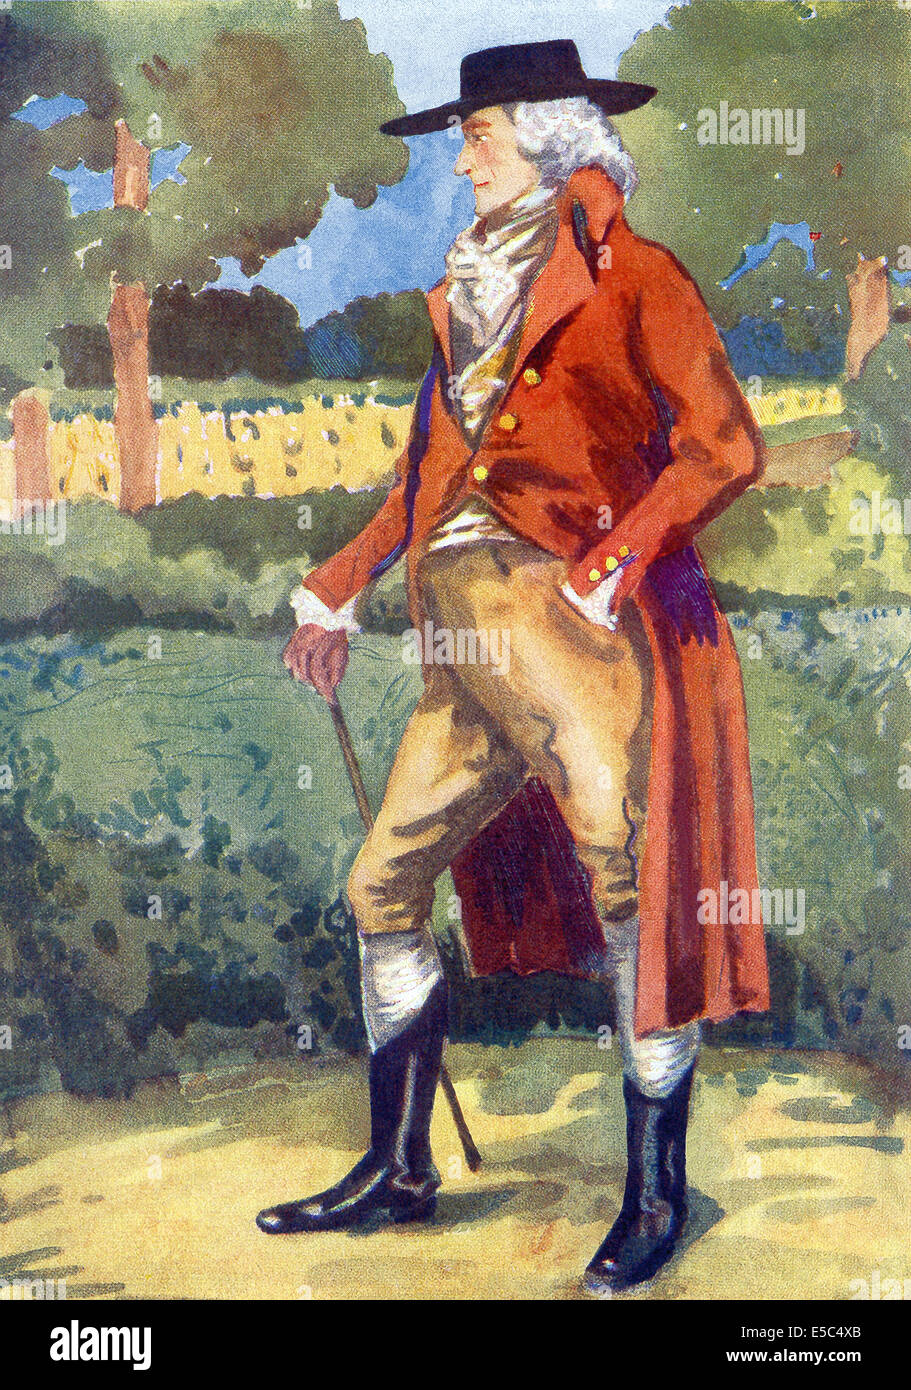 1907 Cette illustration montre un anglais à l'époque de George III (1760-1820). Il n'y a pas de poignets maintenant sur la veste. Banque D'Images